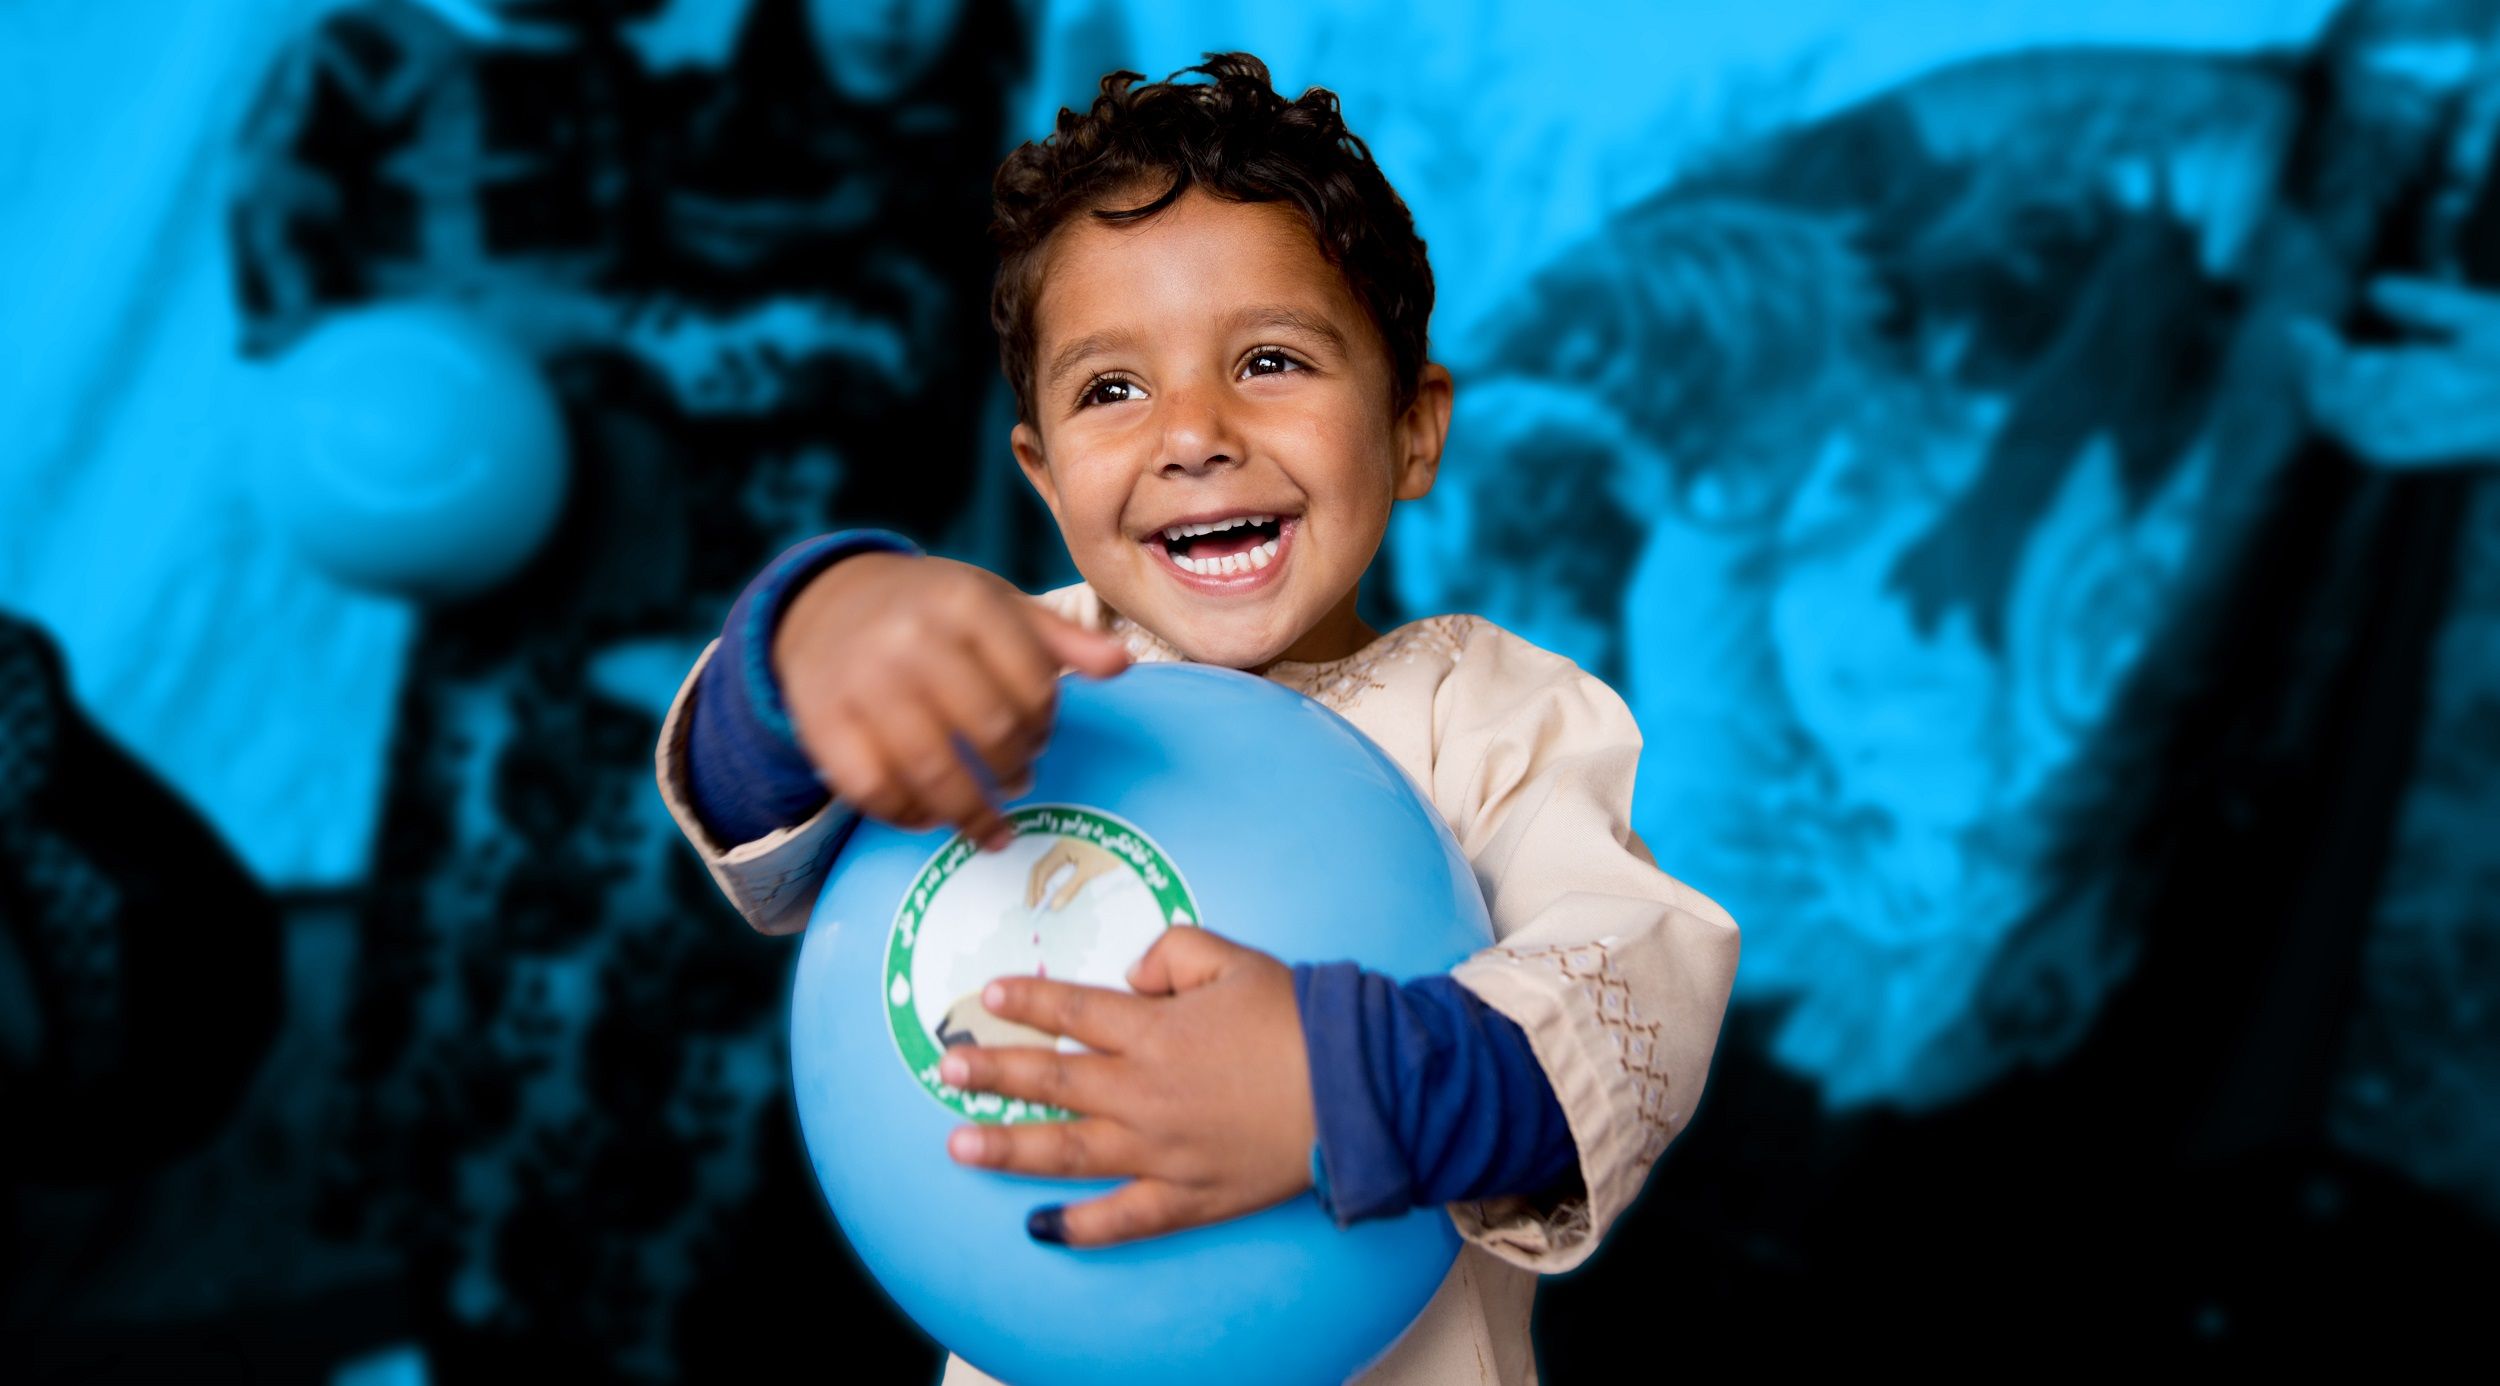 بچوں کا عالمی دن: ابوظہبی میں شیخ خلیفہ میڈیکل سٹی کی بچوں کے لیے آرائش اور آرٹ ورک. میں اضافہ